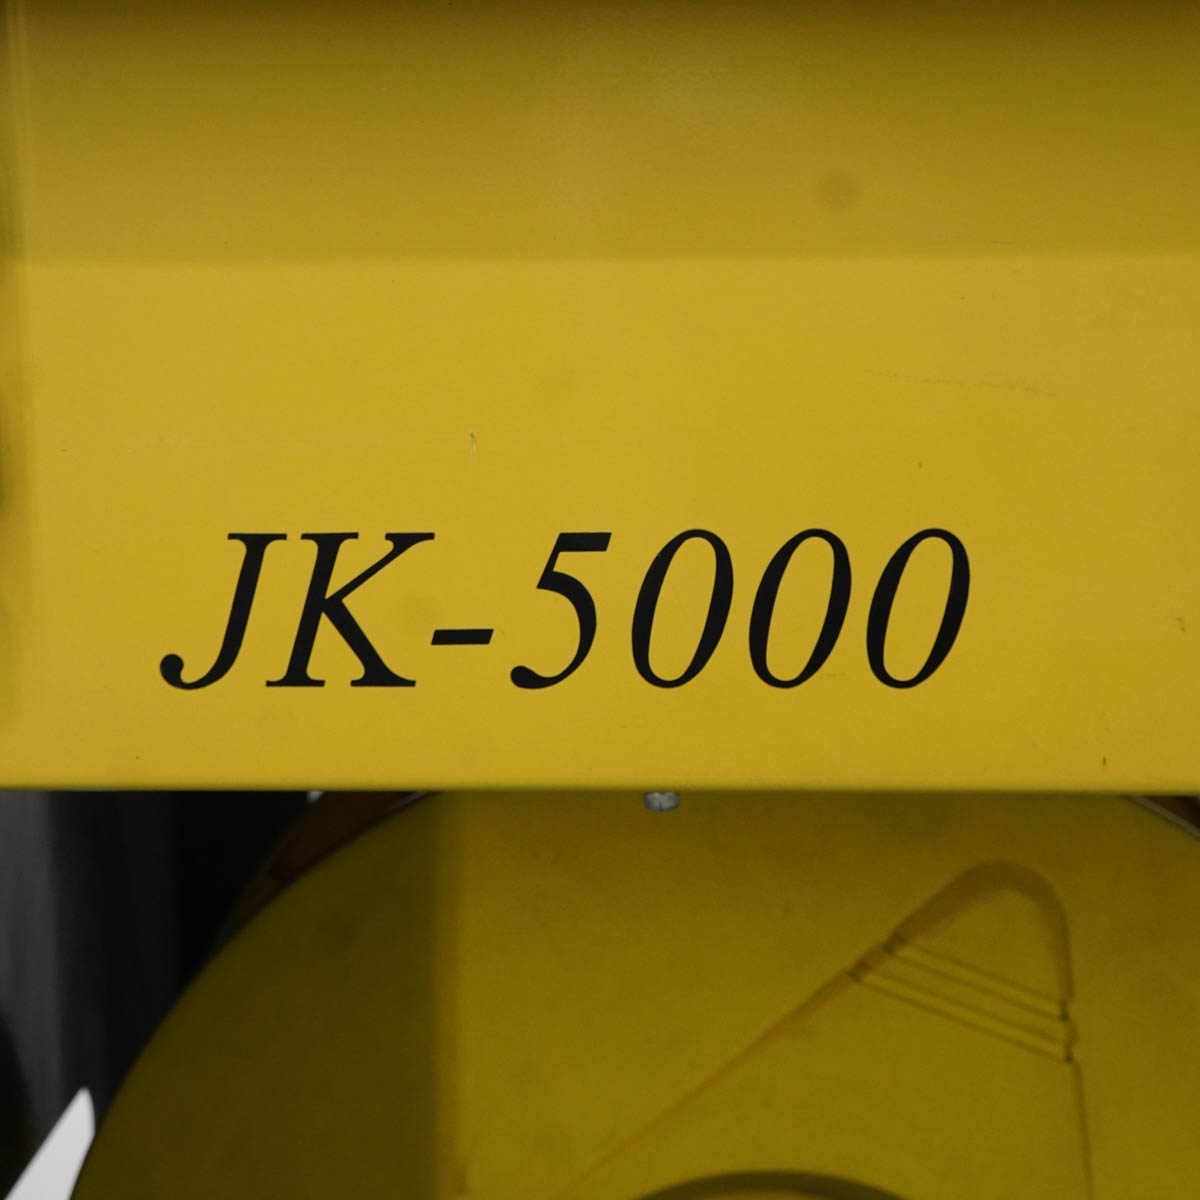 未使用 DIRWINGSショップ PG USED 8日保証 STRAPACK JK-5000 梱包機 ST03880-0123 